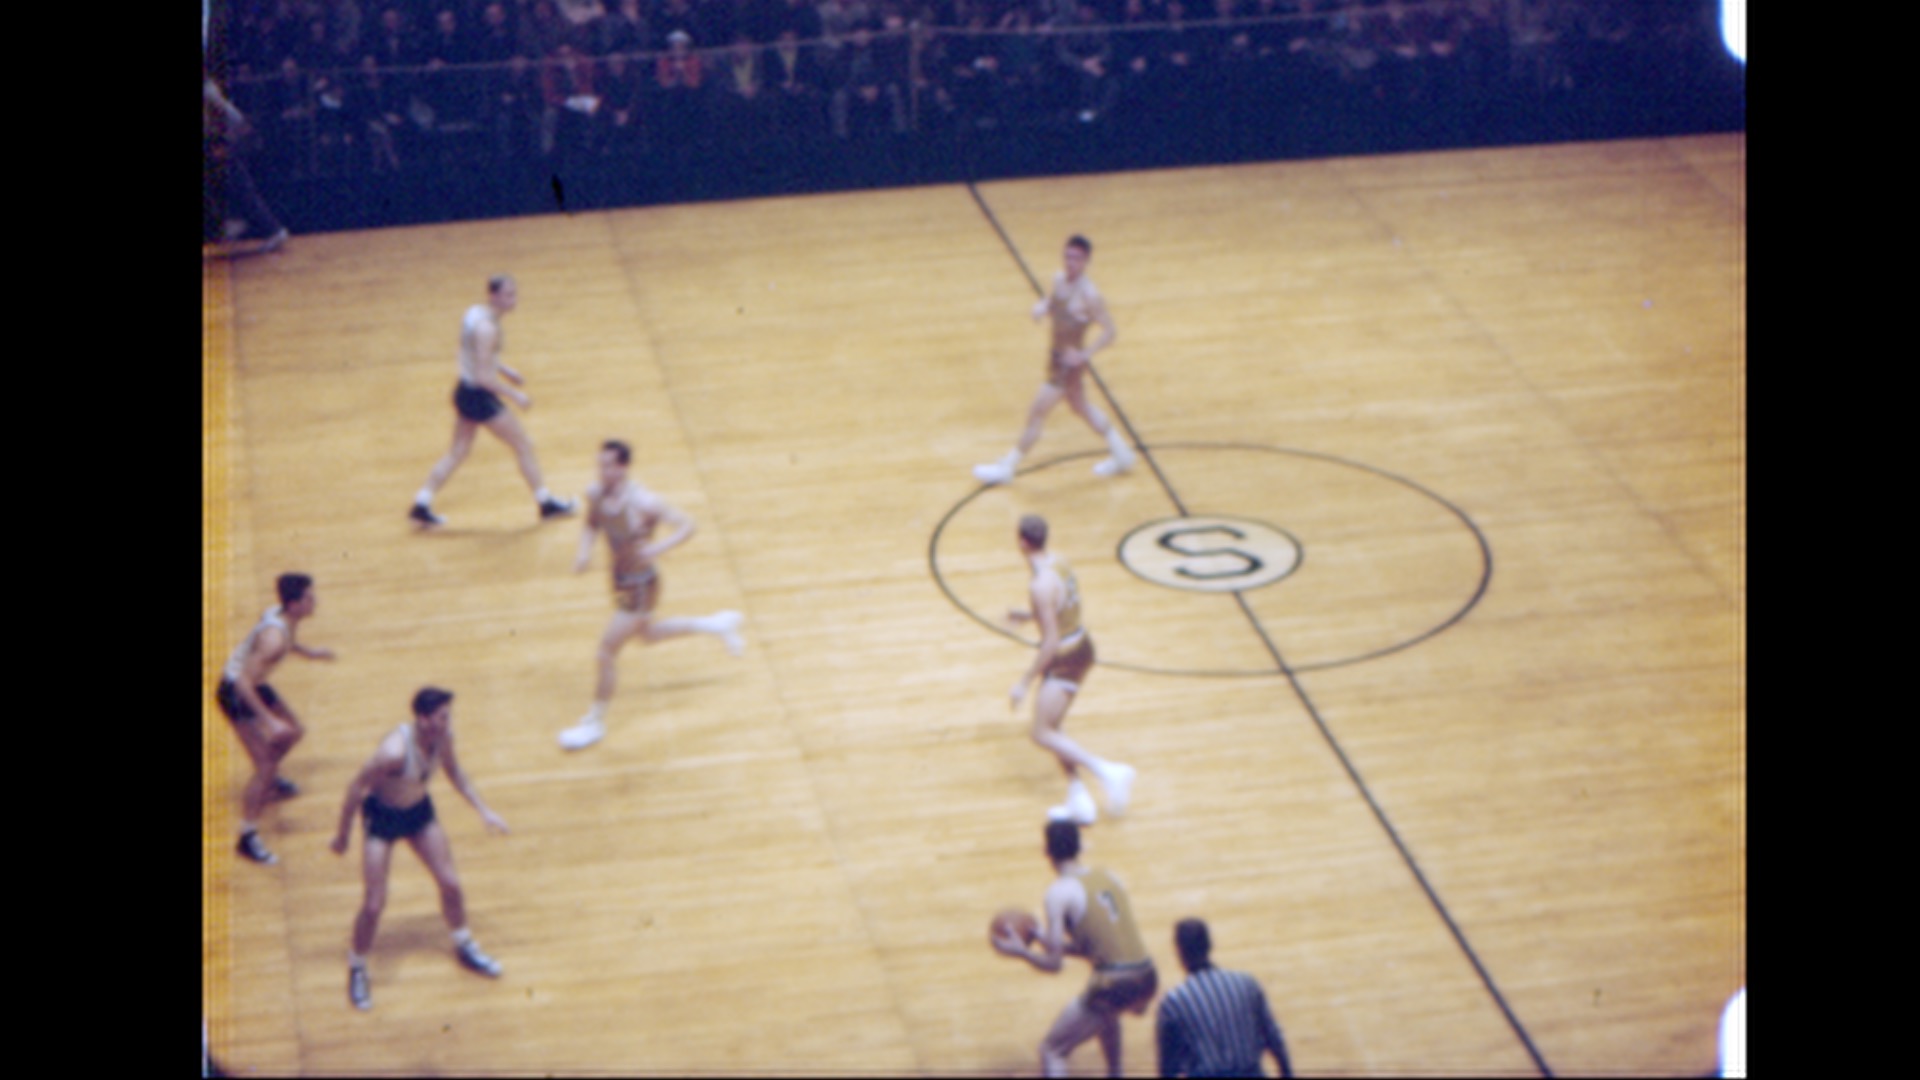 MSC Basketball vs. Notre Dame, 1950